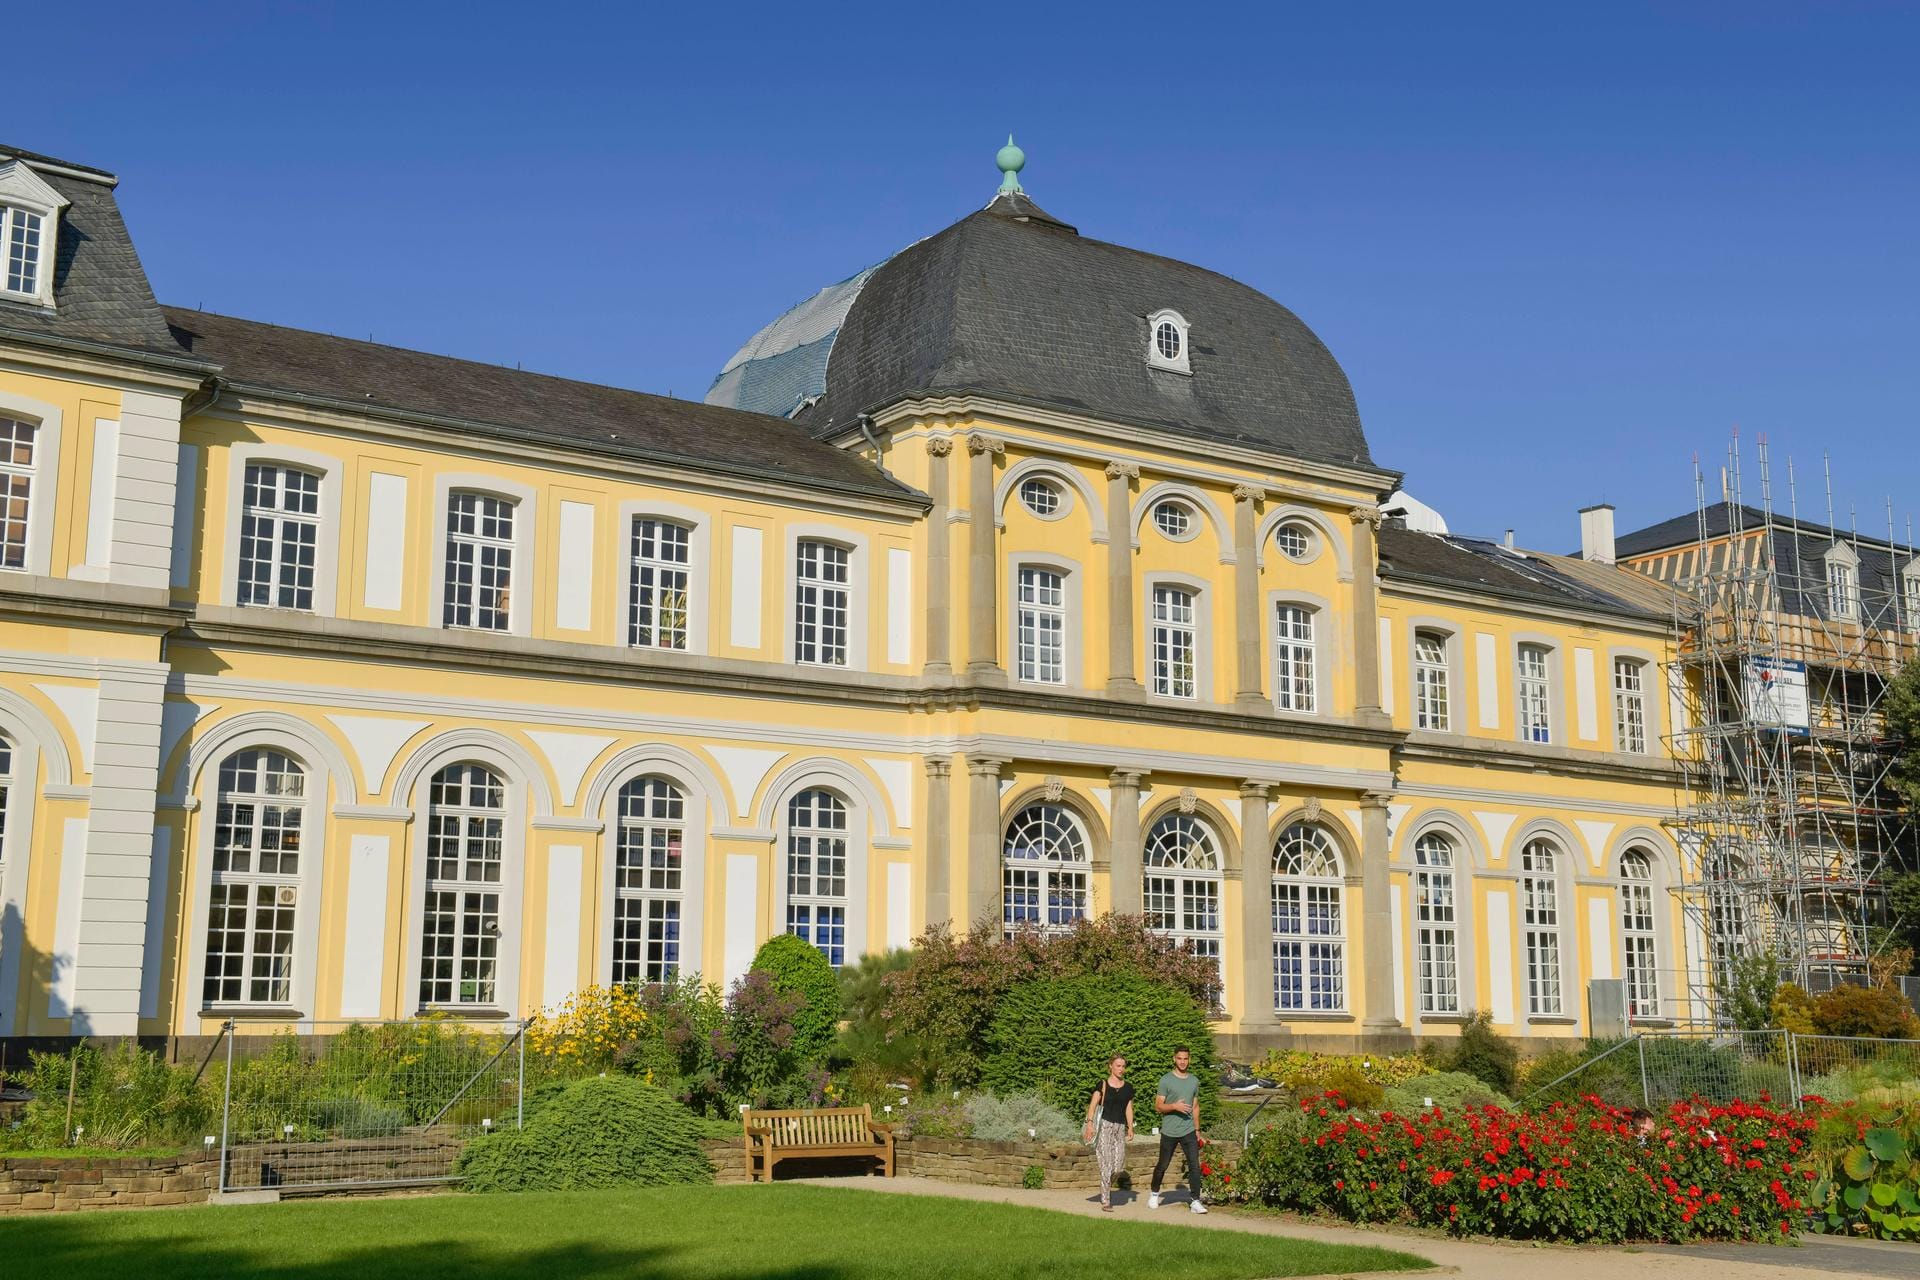 Poppelsdorfer Schloss in Bonn: Ringsherum liegt der beliebte Botanische Garten.